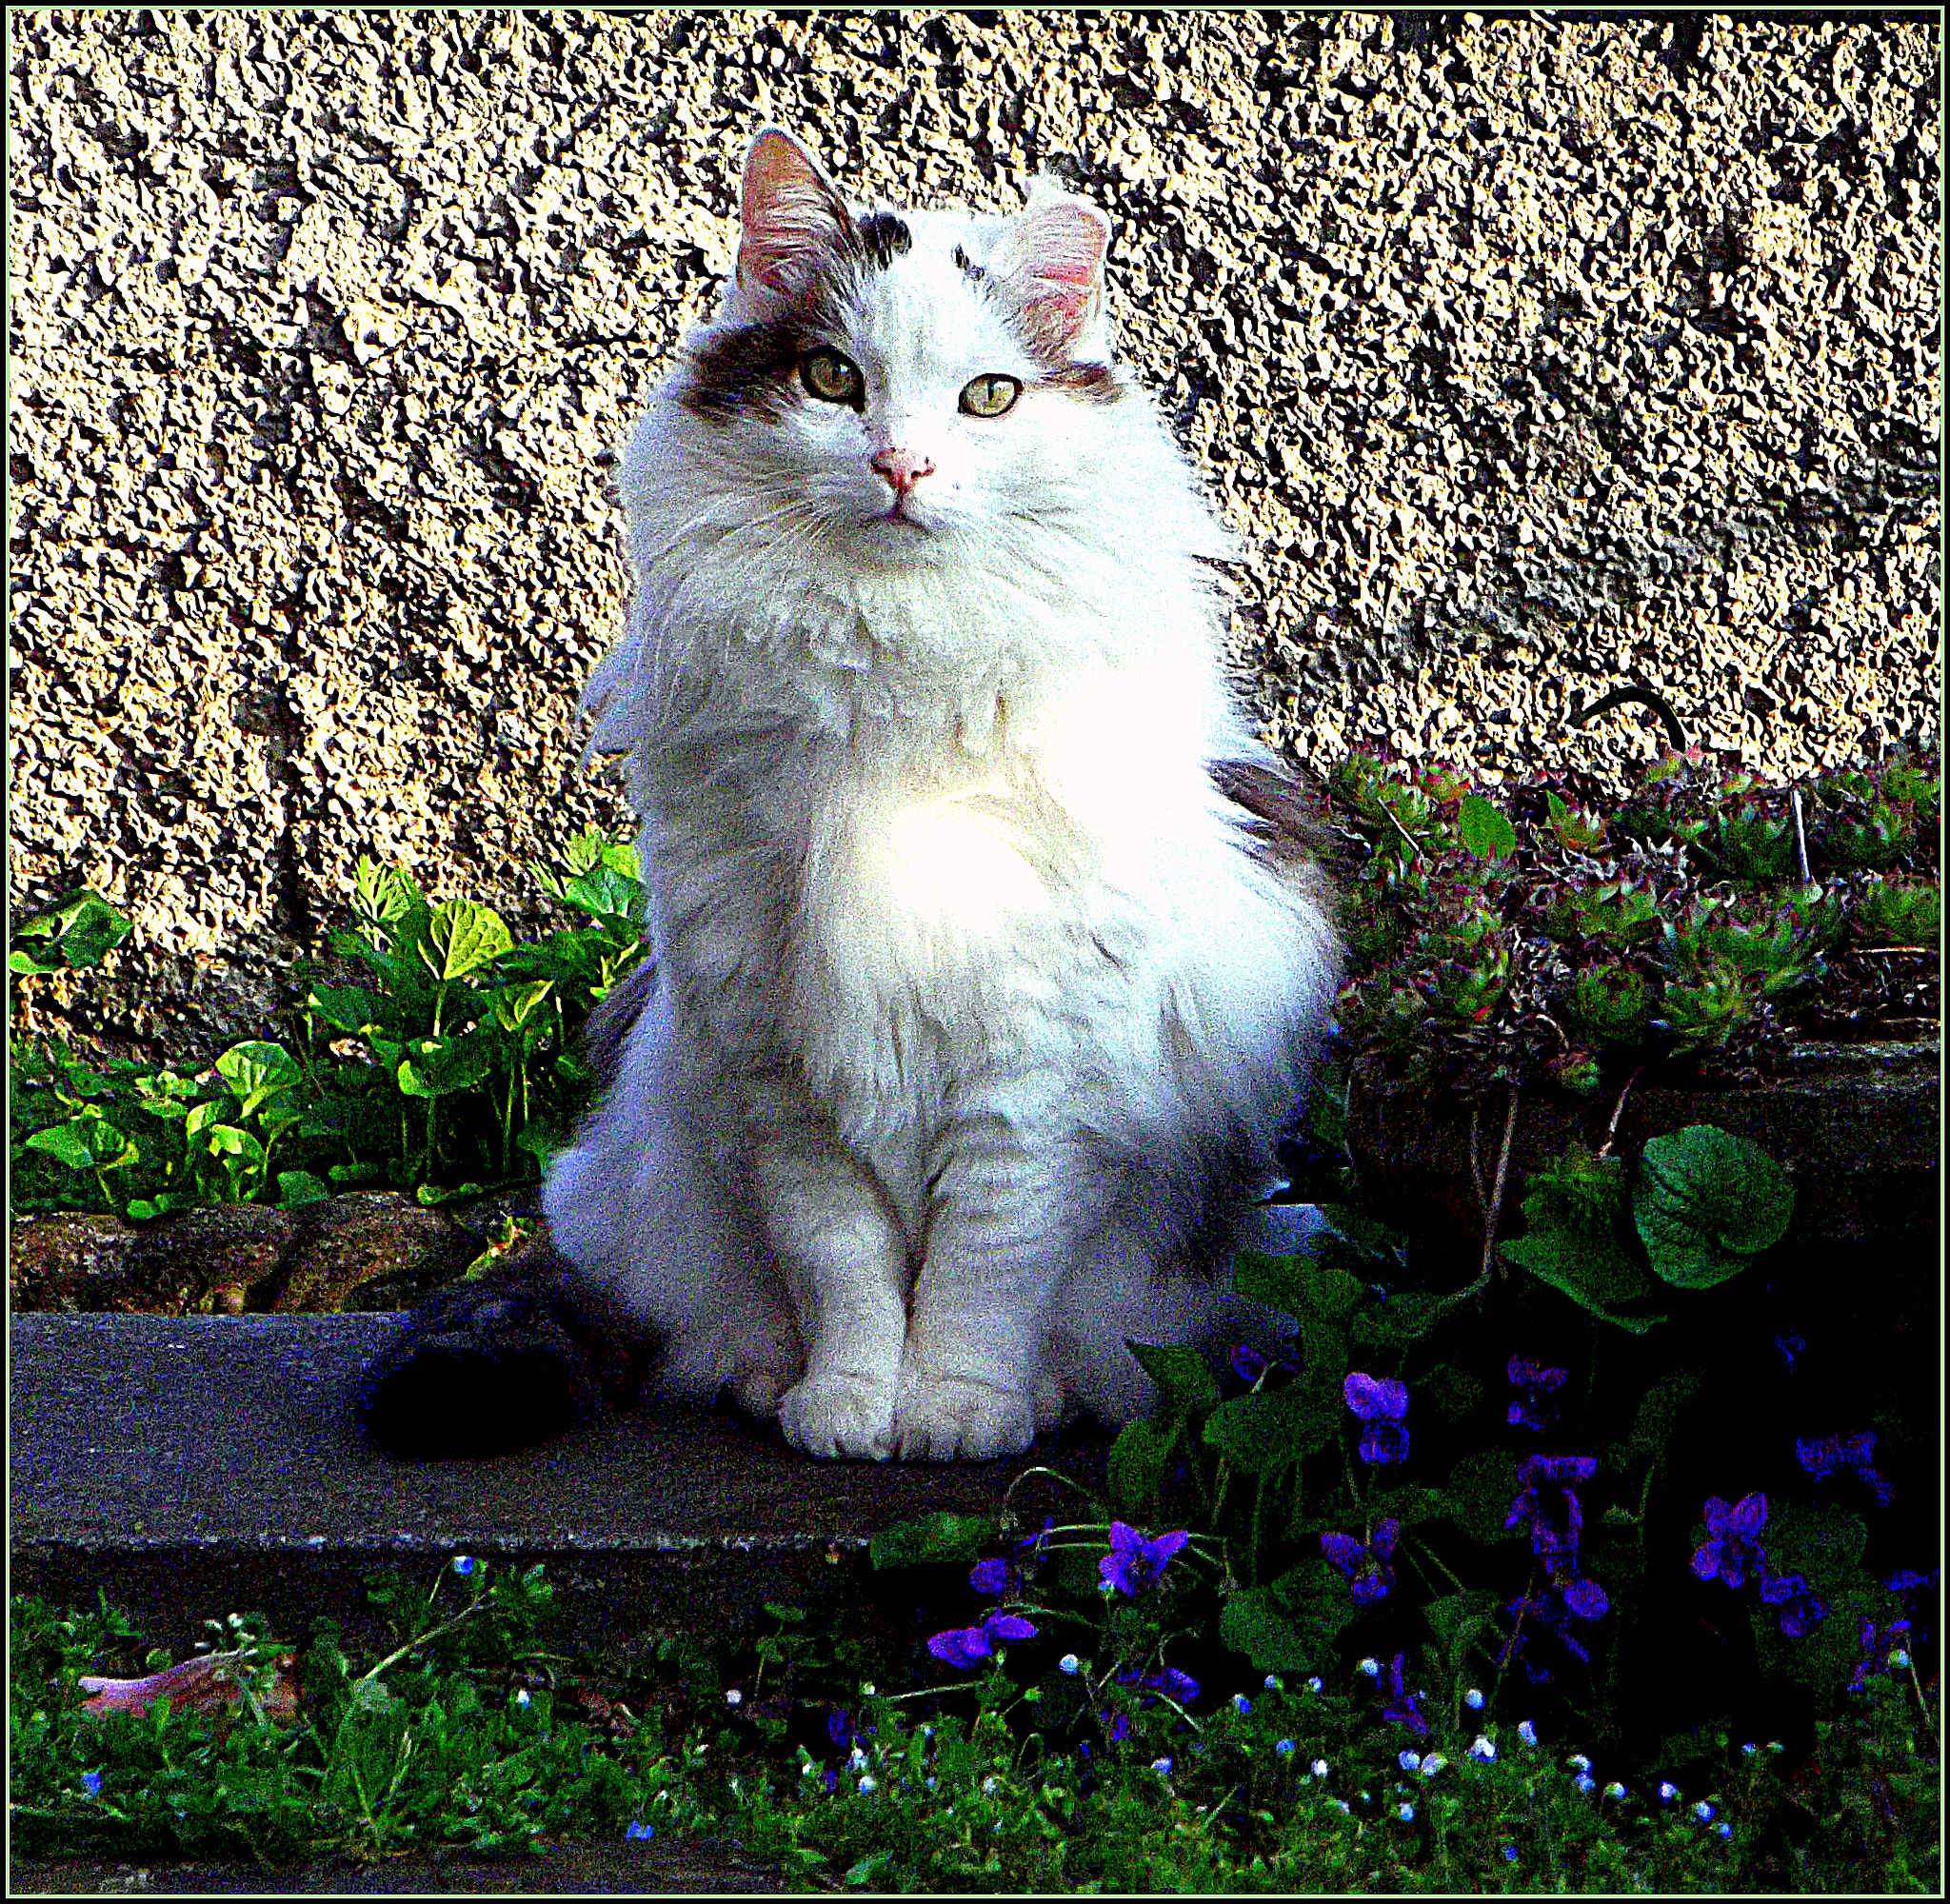 Fujifilm FinePix JX250 sample photo. Bel gatto tra le violette in primavera. photography